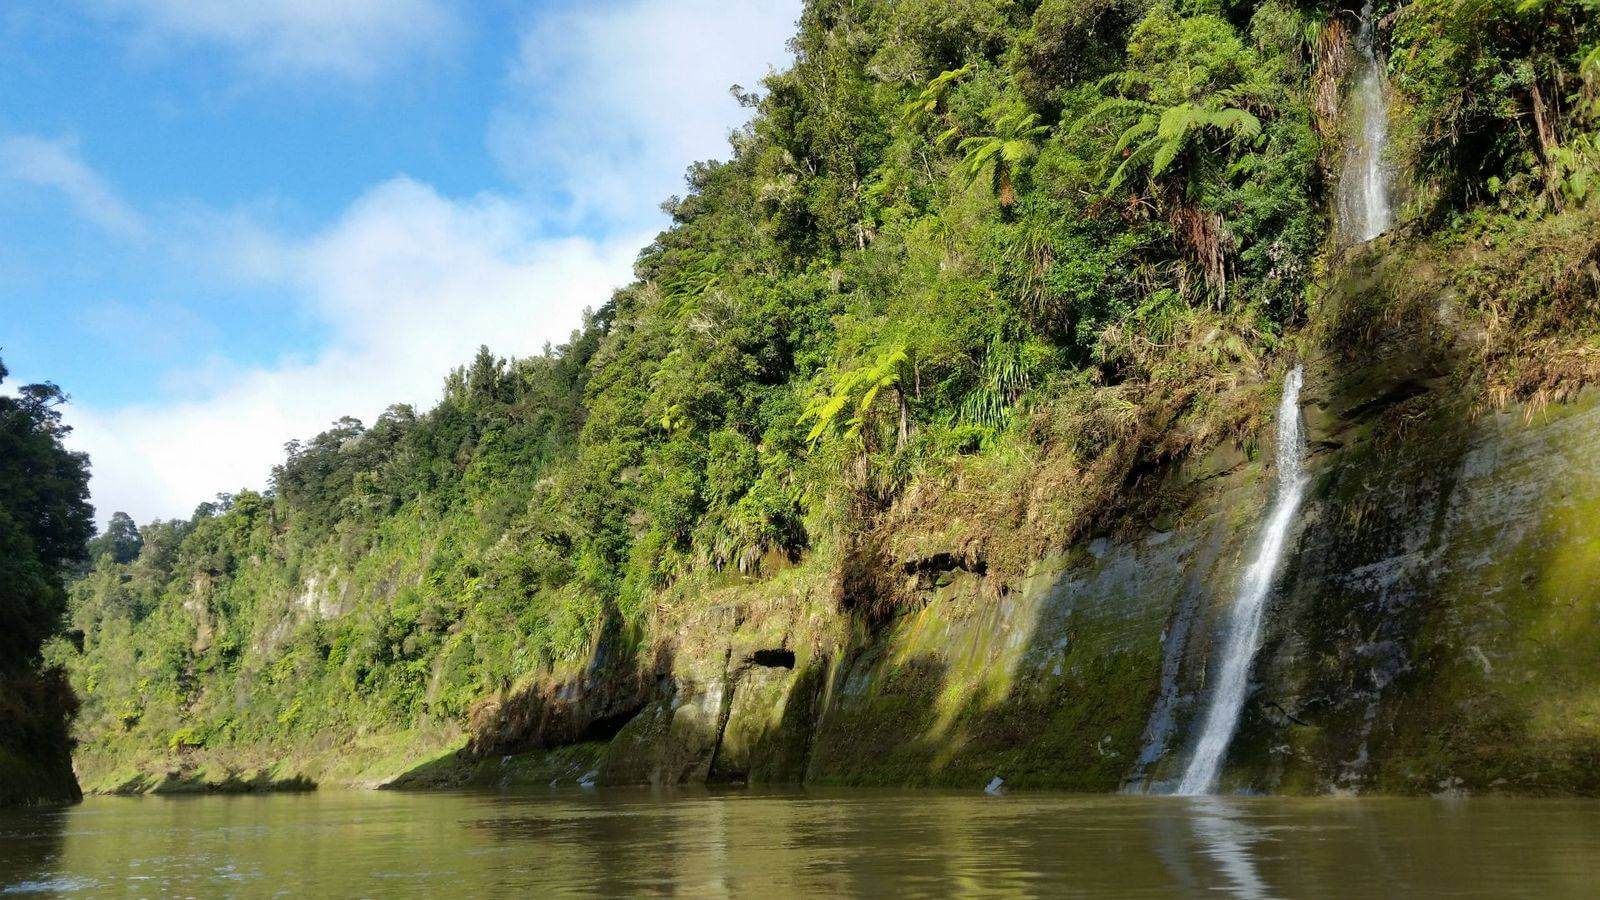 whanganui canoe trips